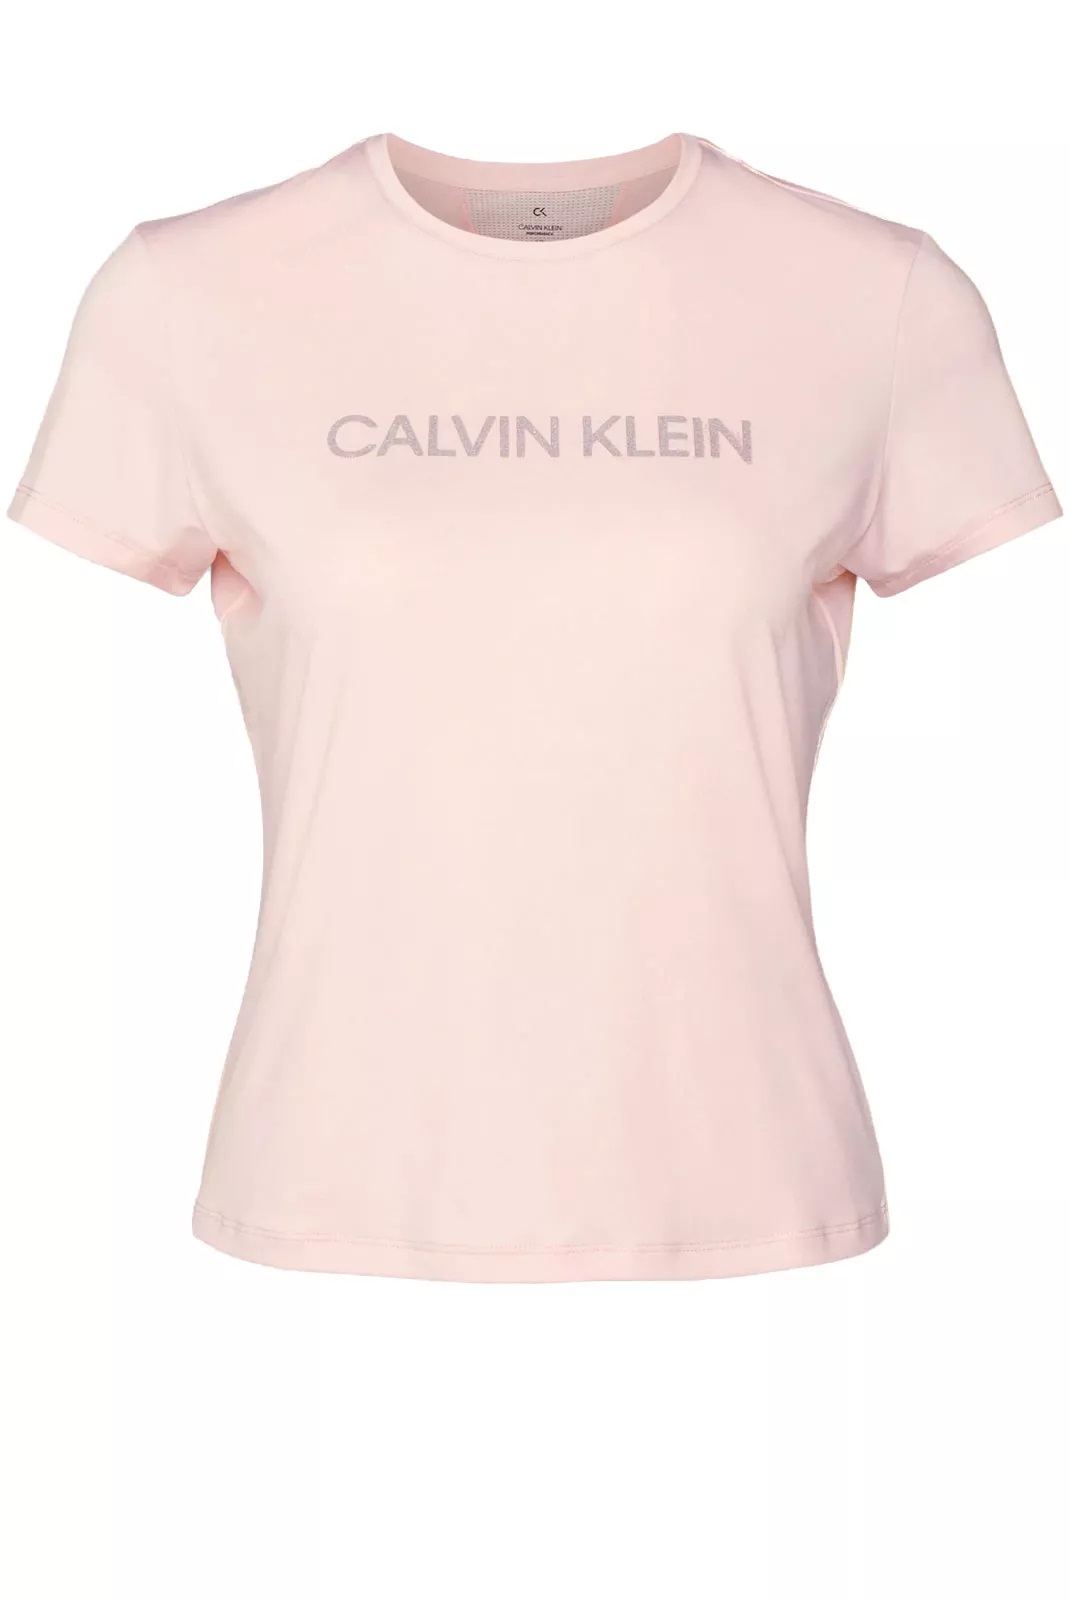 Calvin Klein dámské sportovní tričko s reflexním logem růžové Velikost: M